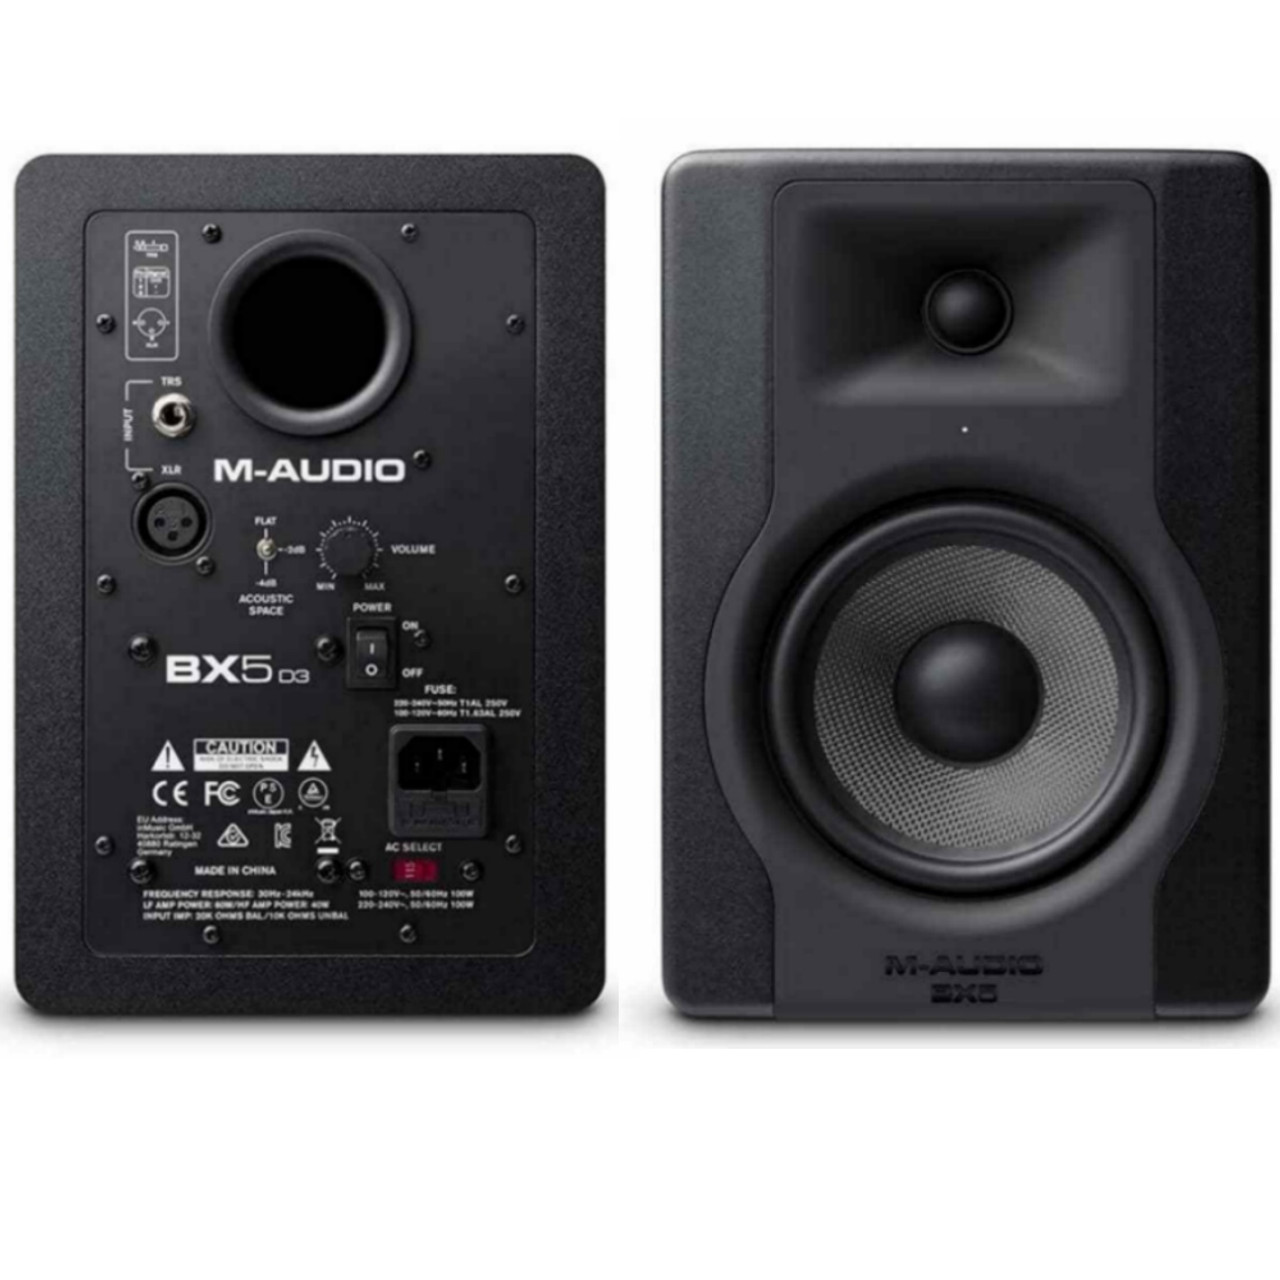 Audio bx. Мониторы m Audio bx5. M-Audio bx5 d3. Активный студийный монитор m-Audio bx5 d3. Студийный колонка m-Audio bx5 d2.